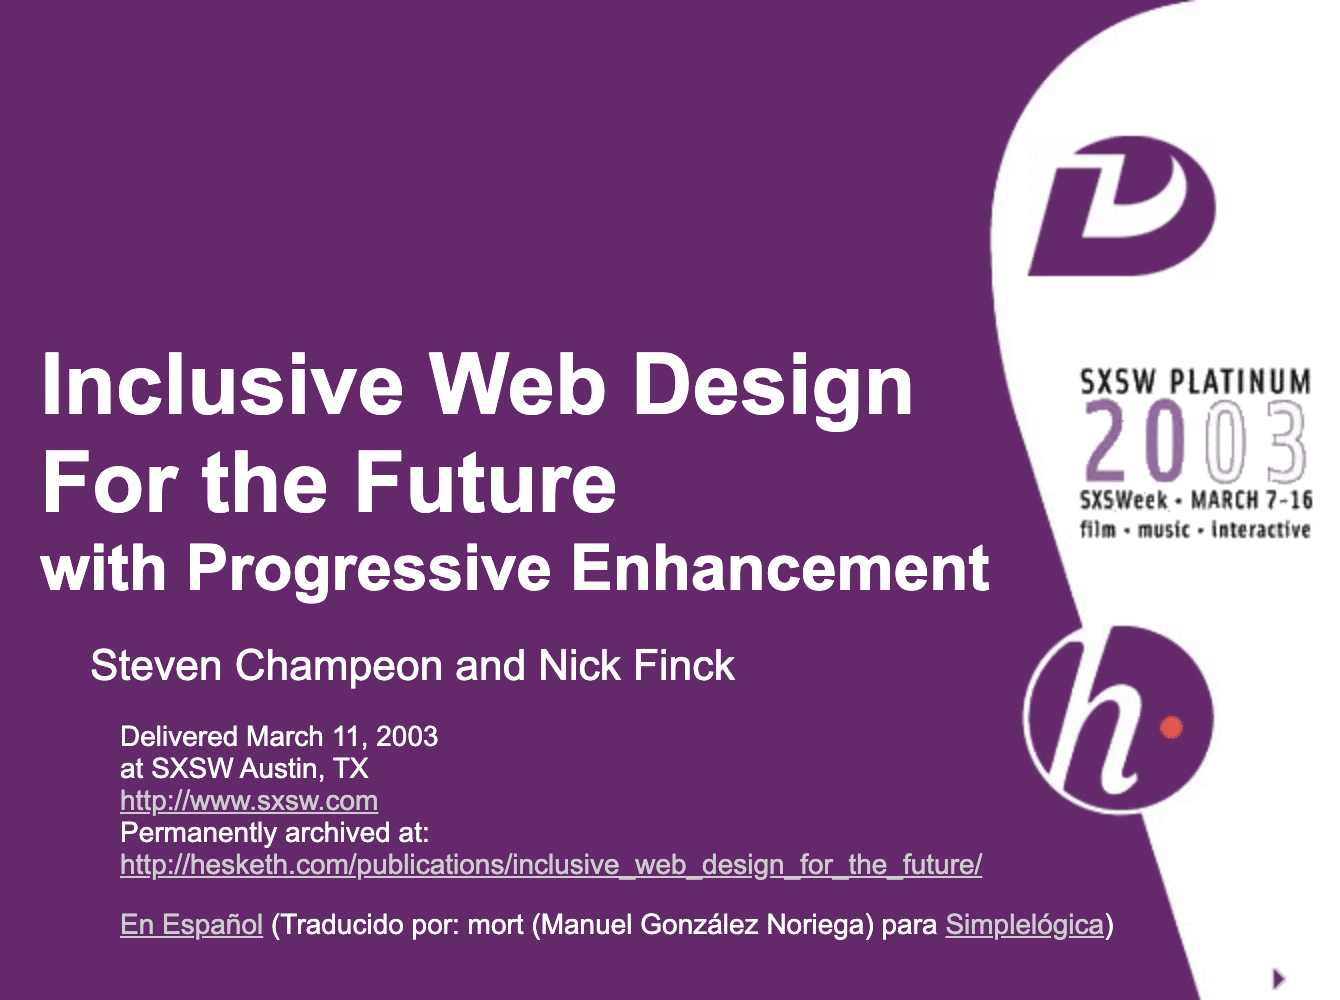 Kademeli geliştirmeyle geleceğe yönelik kapsayıcı web tasarımı. Finck ve Champeon&#39;ın orijinal sunusundan başlık slaytı.